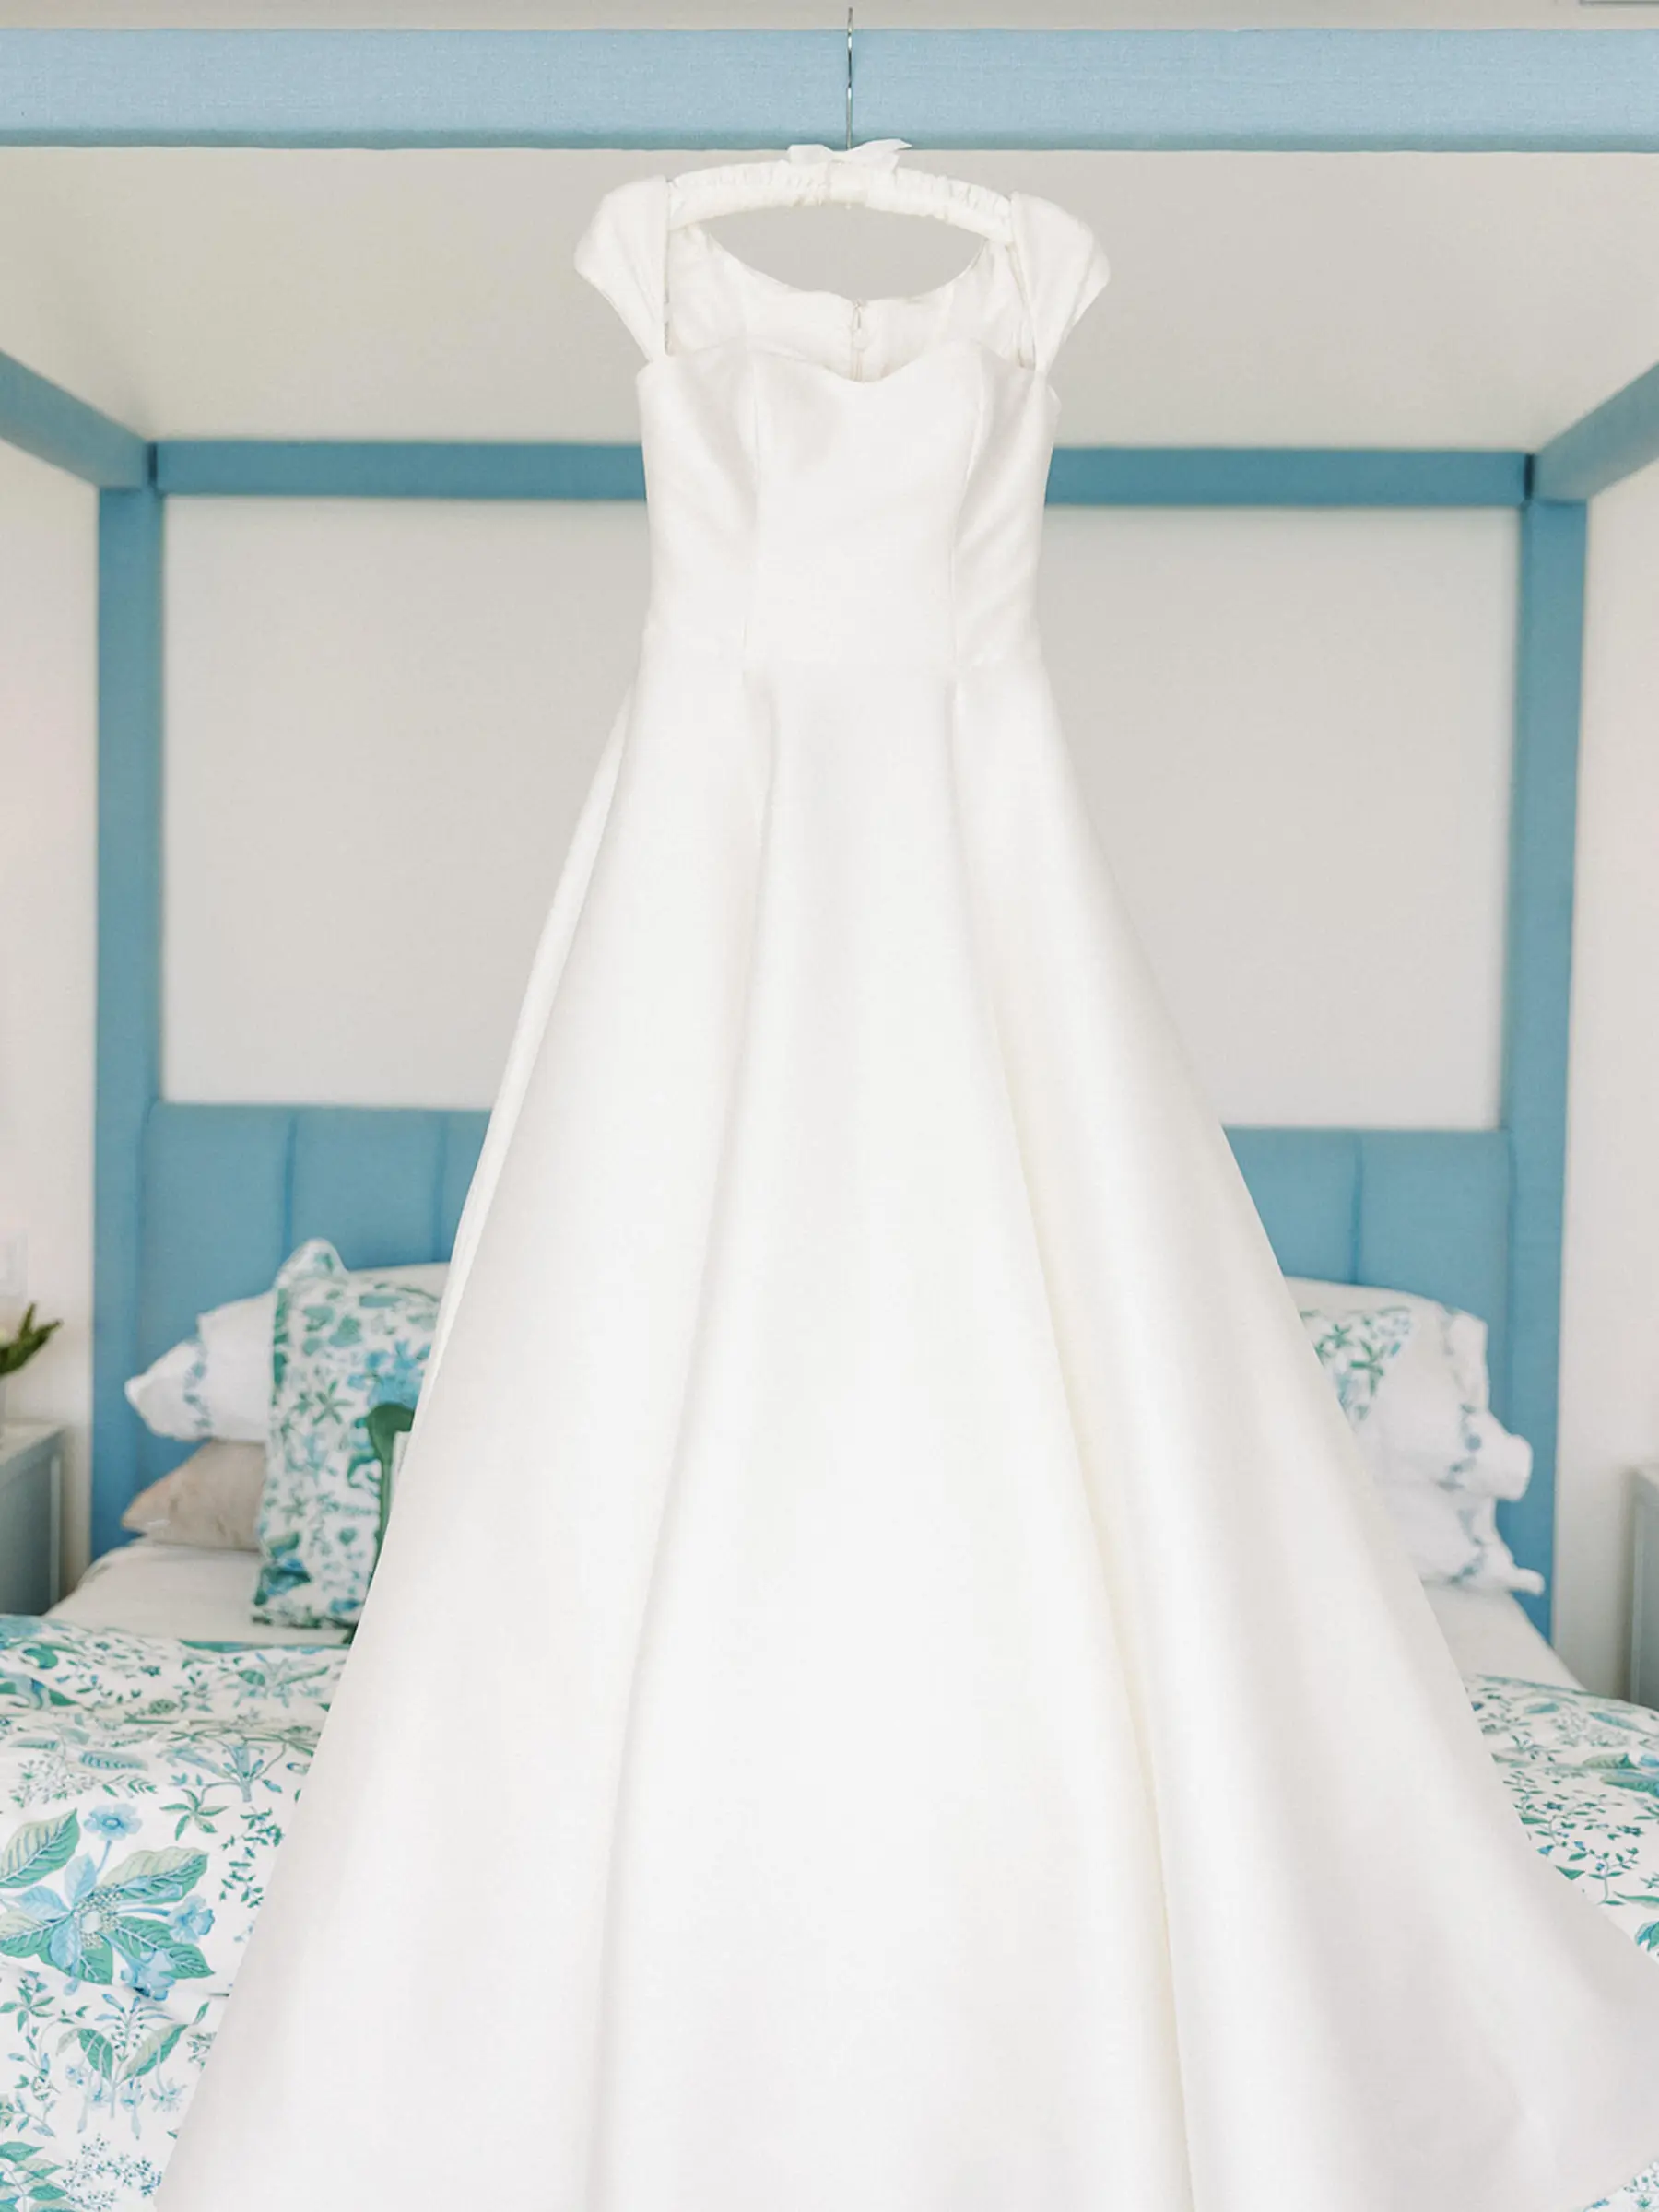 Classic White Cap Sleeve A-Line Ballgown Sareh Nouri Wedding Dress and Flower Applique Veil Inspiration